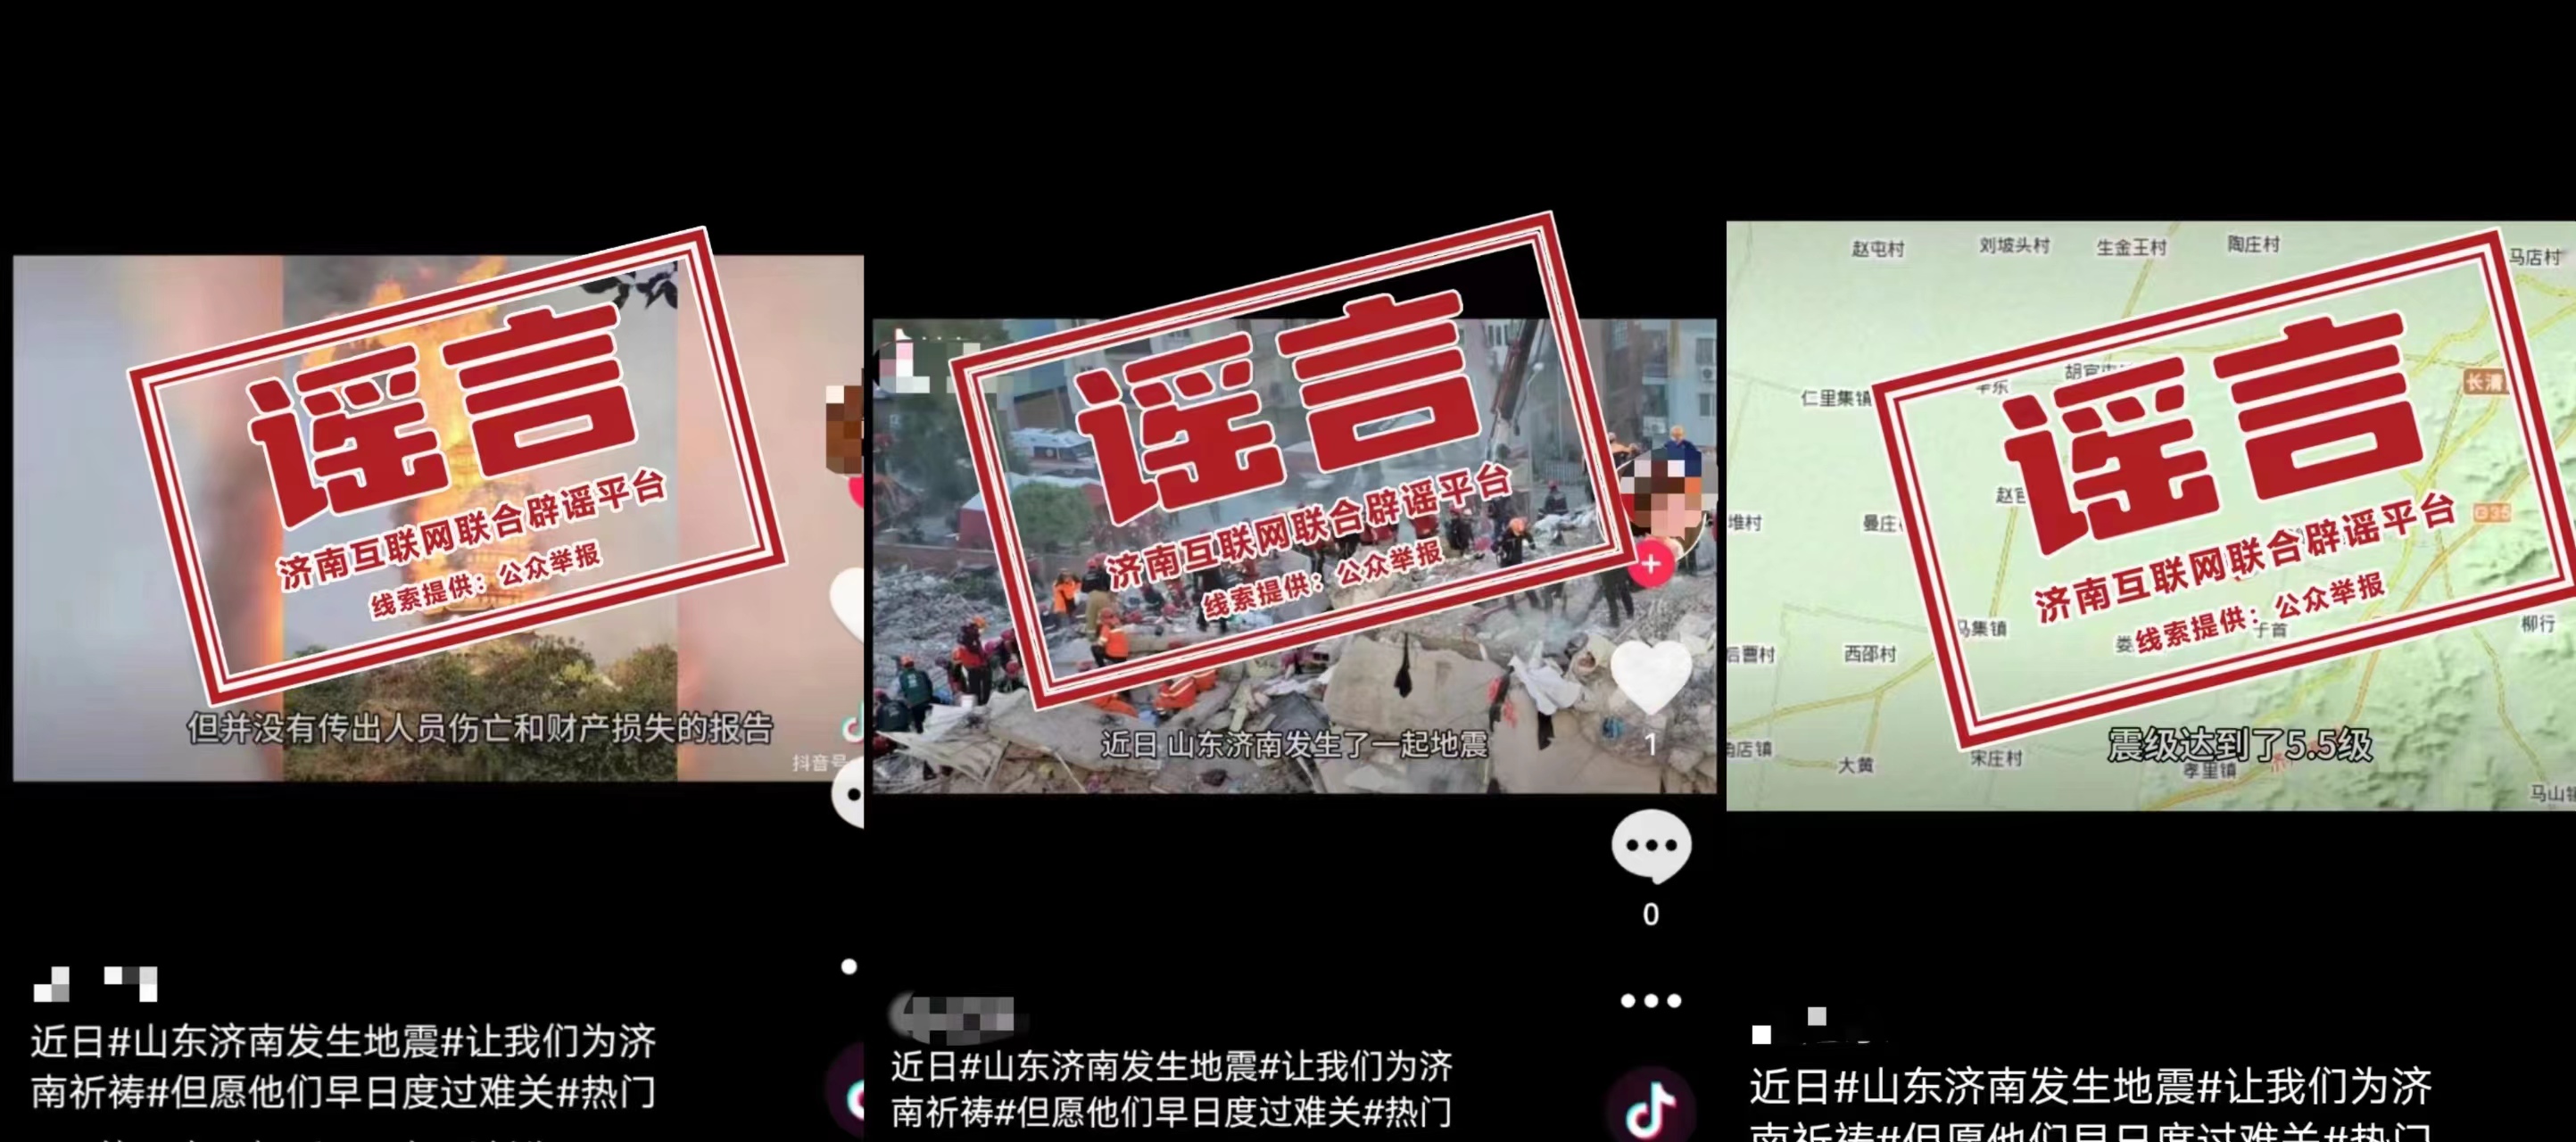 发布谣言的社交平台账号内容 图源：中国互联网联合辟谣平台